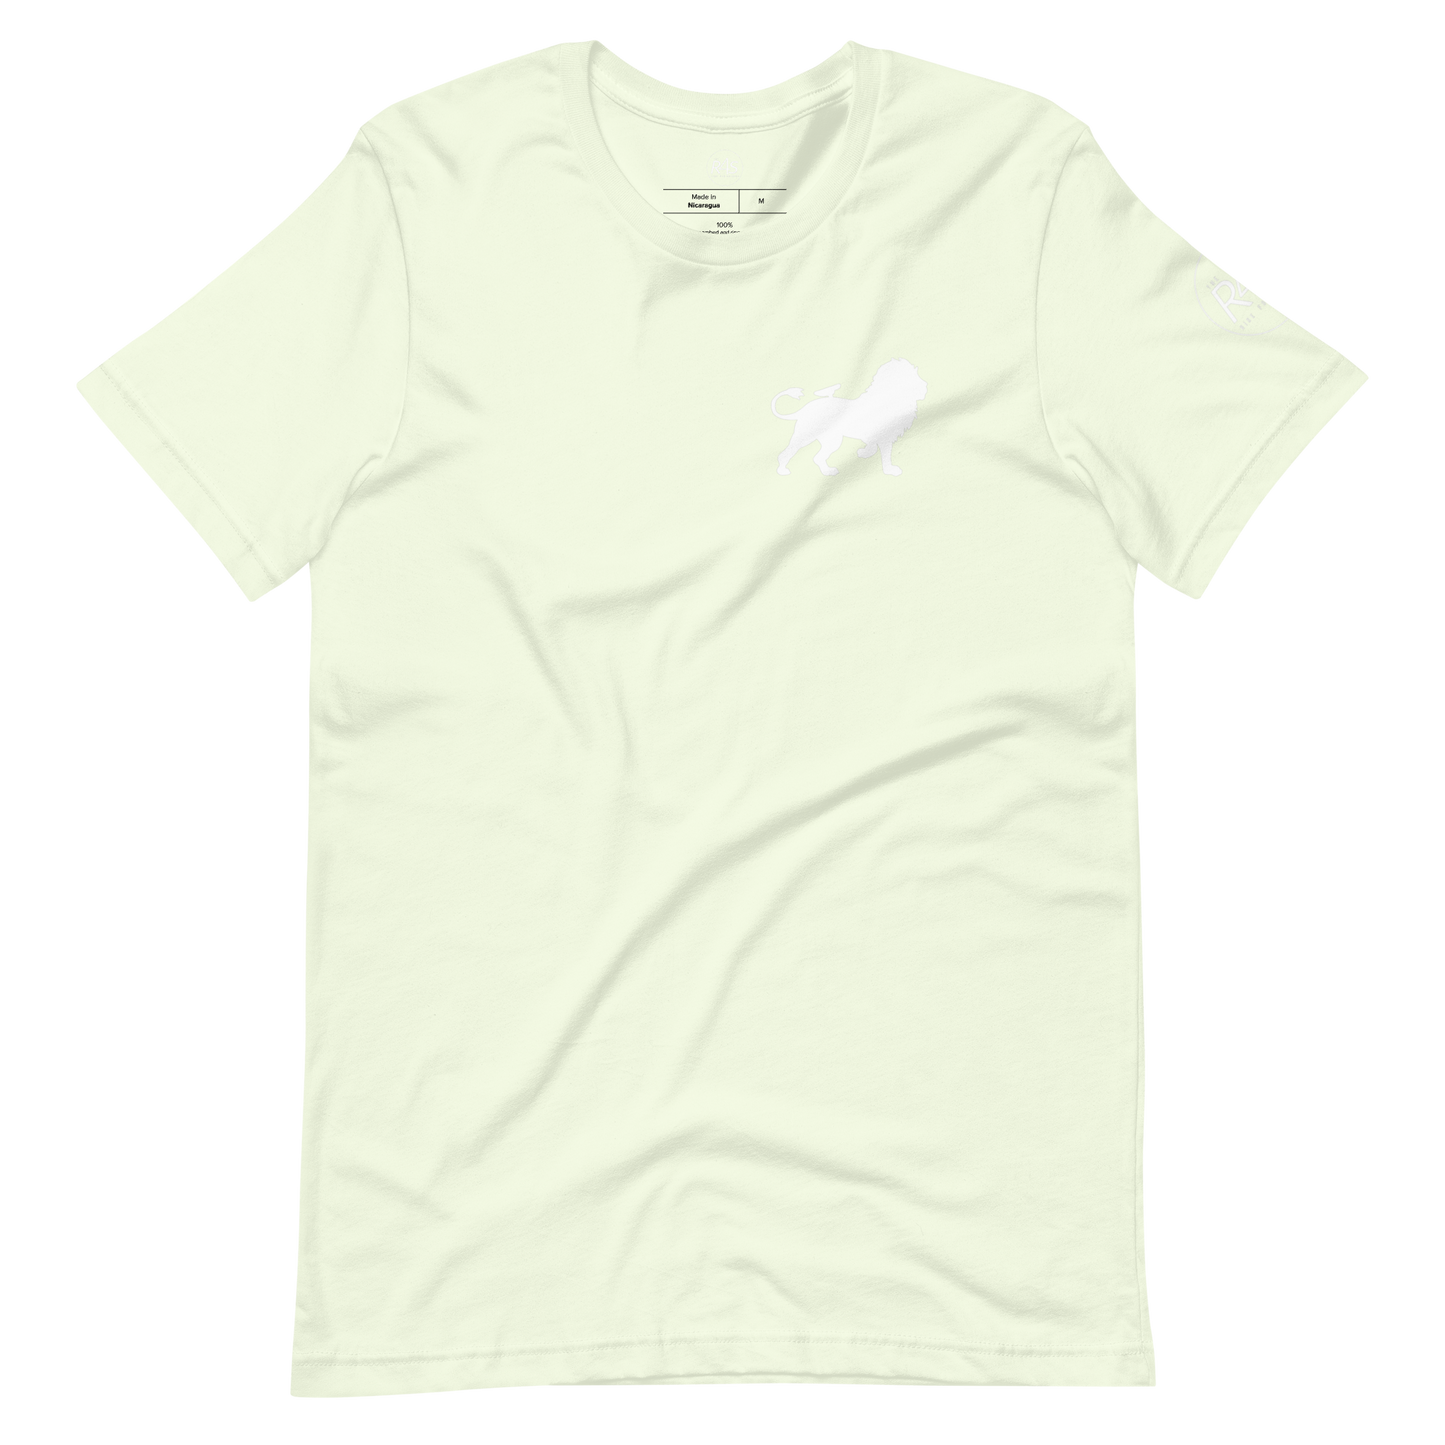 Signature Lion Short-sleeve unisex t-shirt